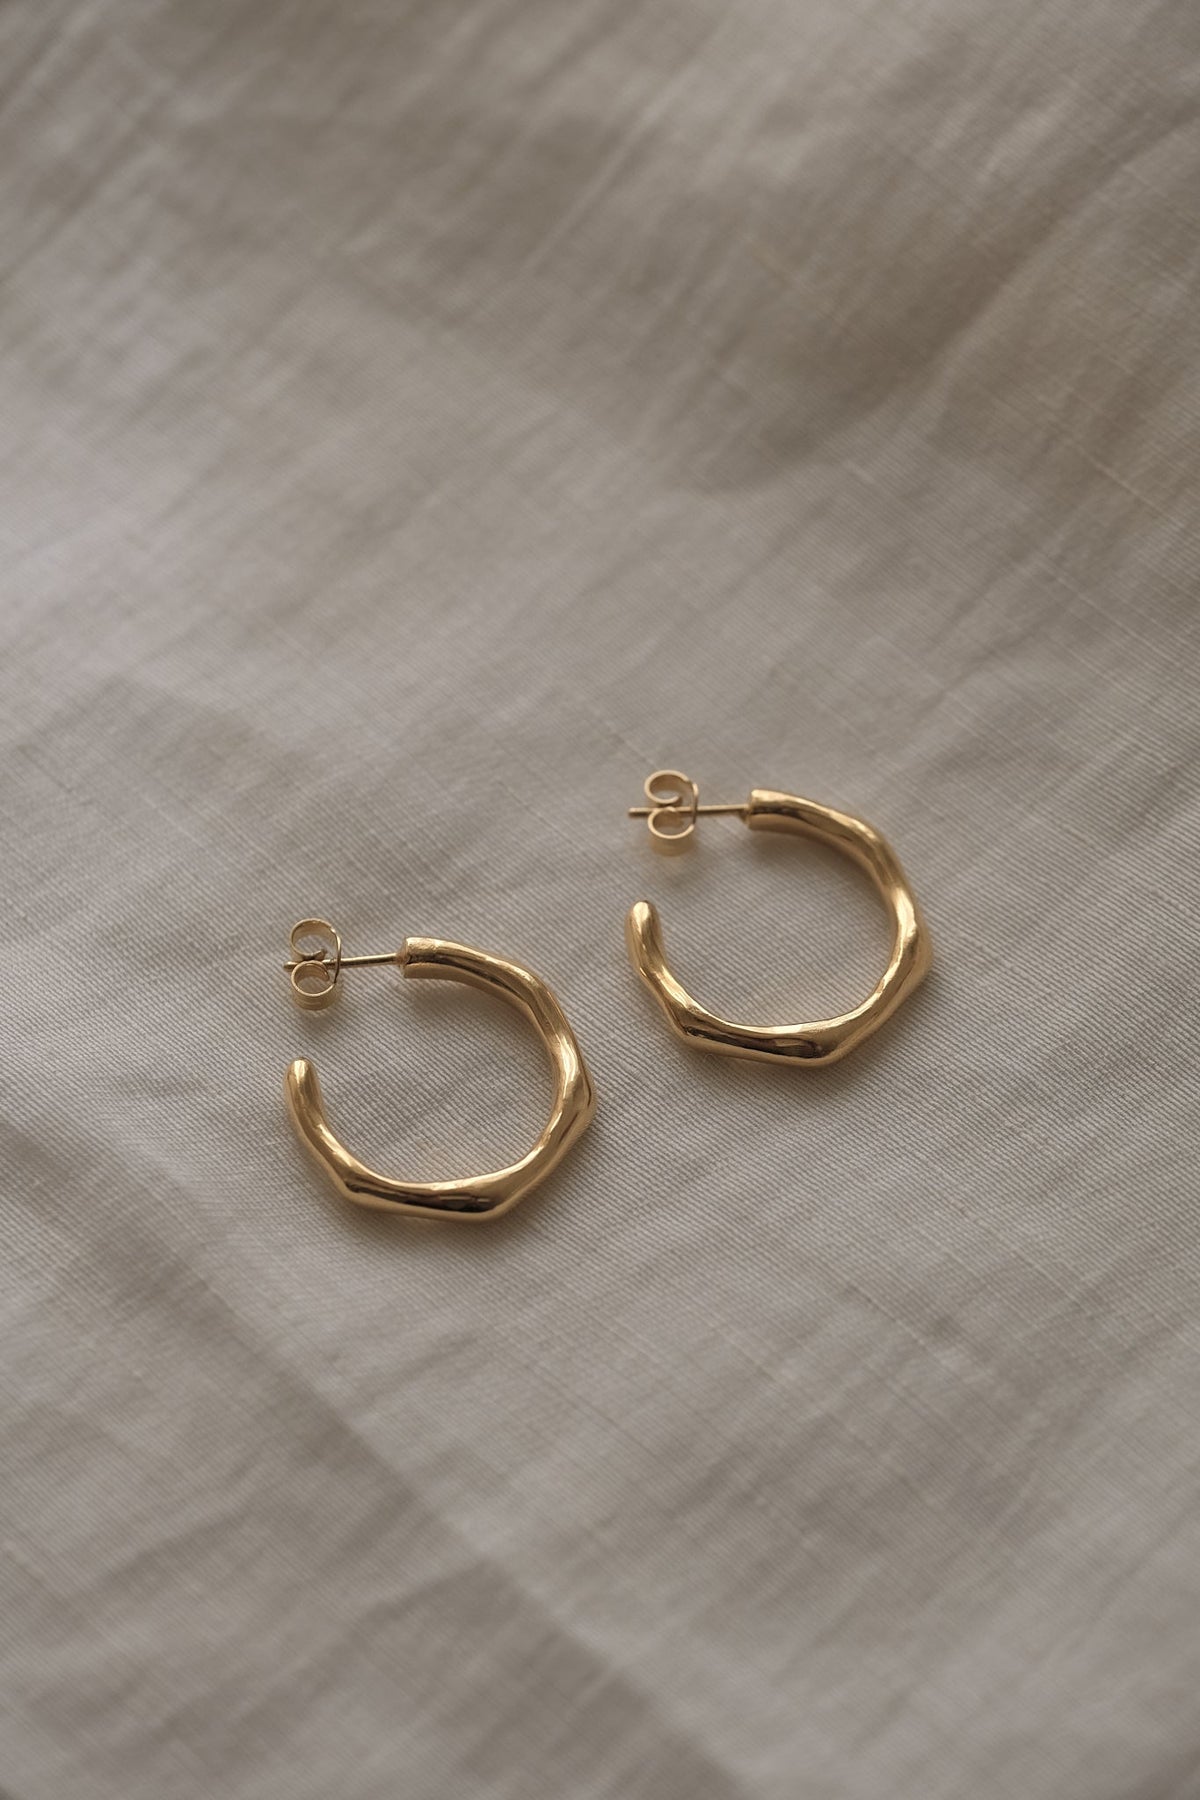 LUMI big earrings 18k gold